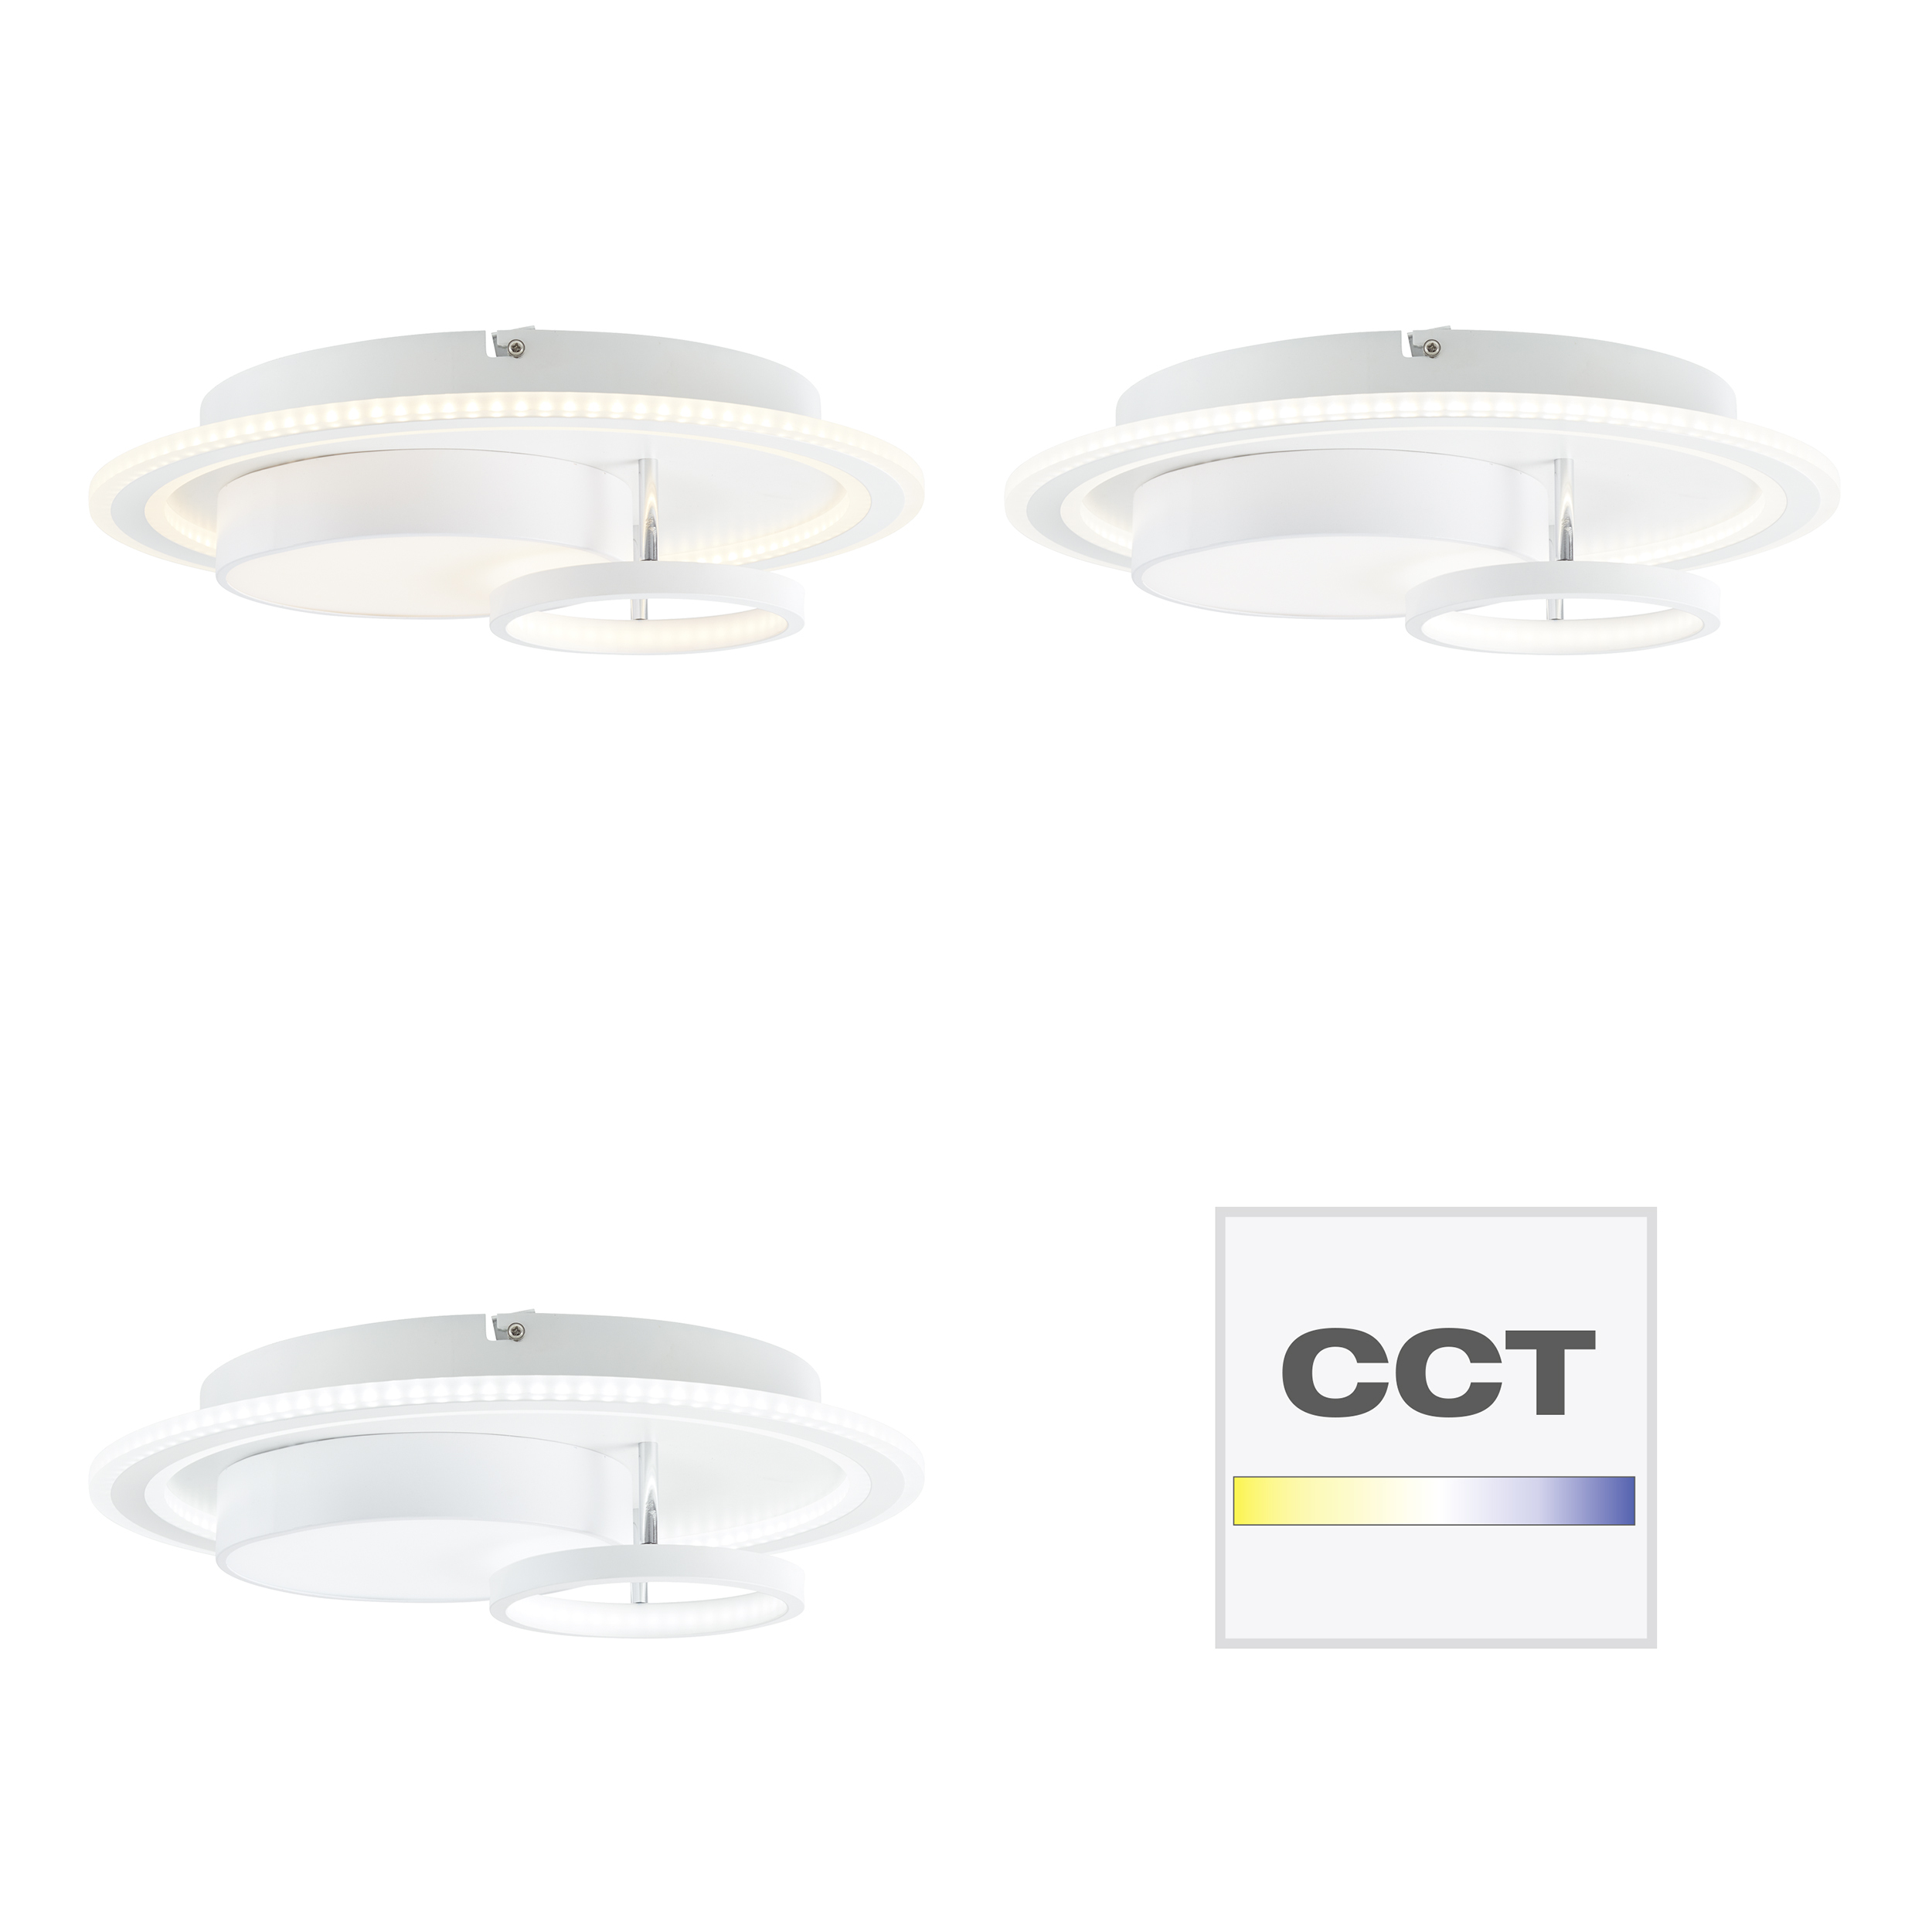 Sigune LED Ceiling Light 40x40cm G99385/75 | white/black